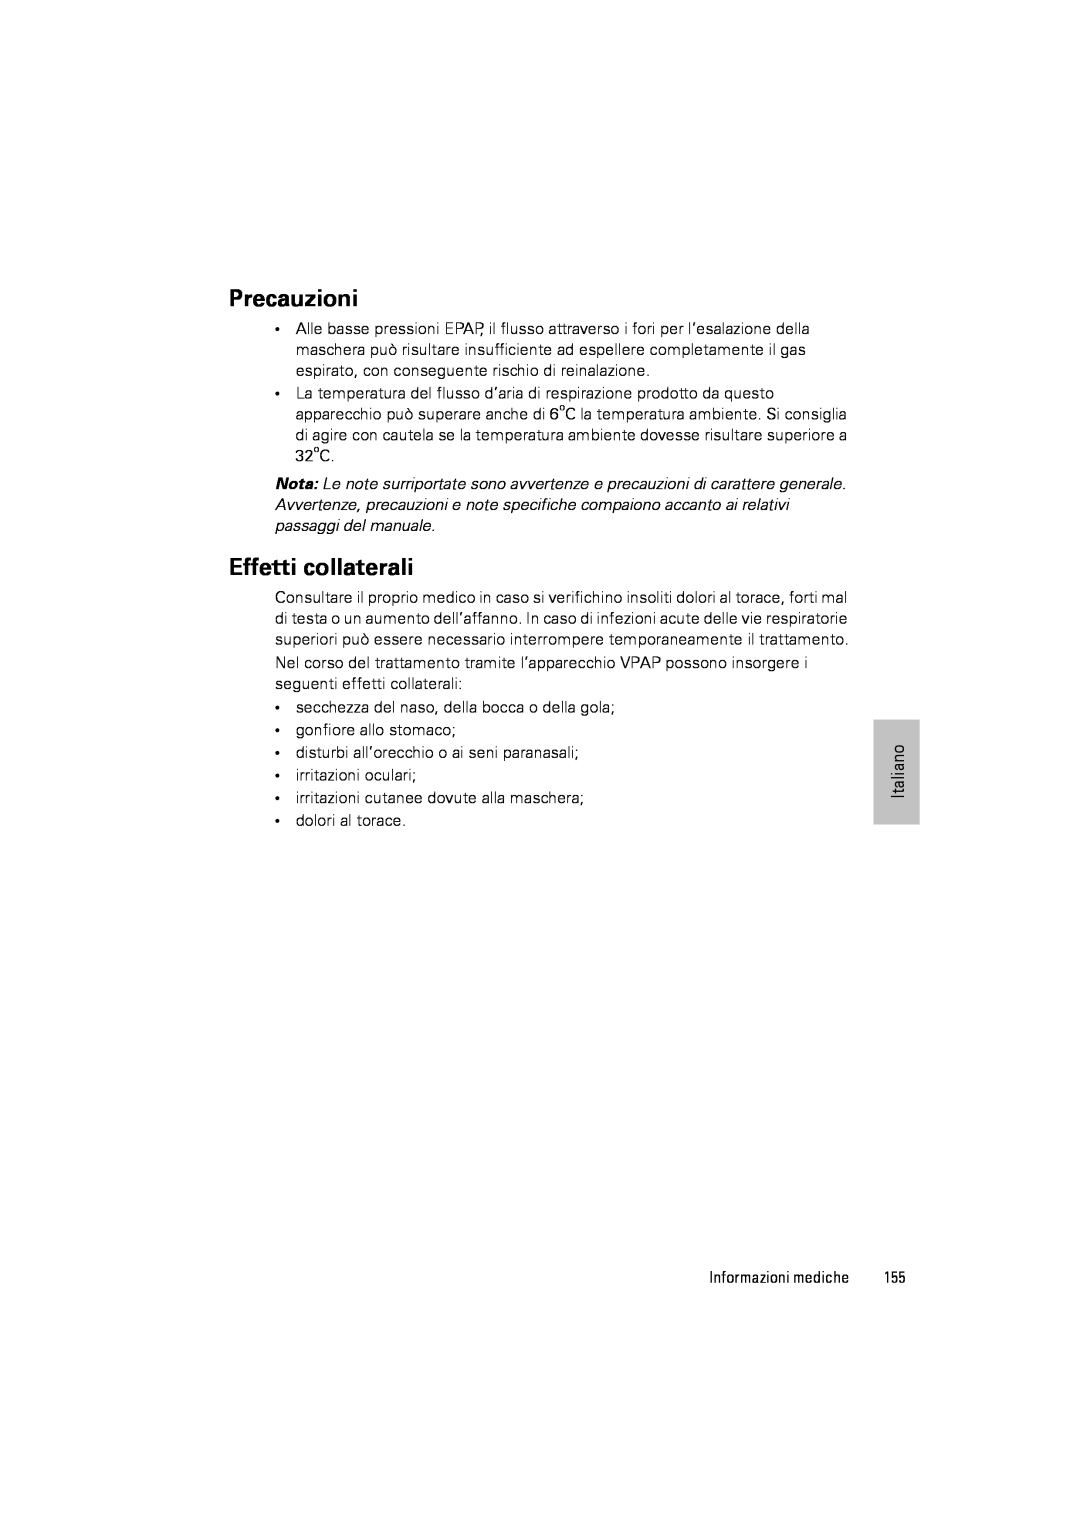 ResMed III & III ST user manual Precauzioni, Effetti collaterali 